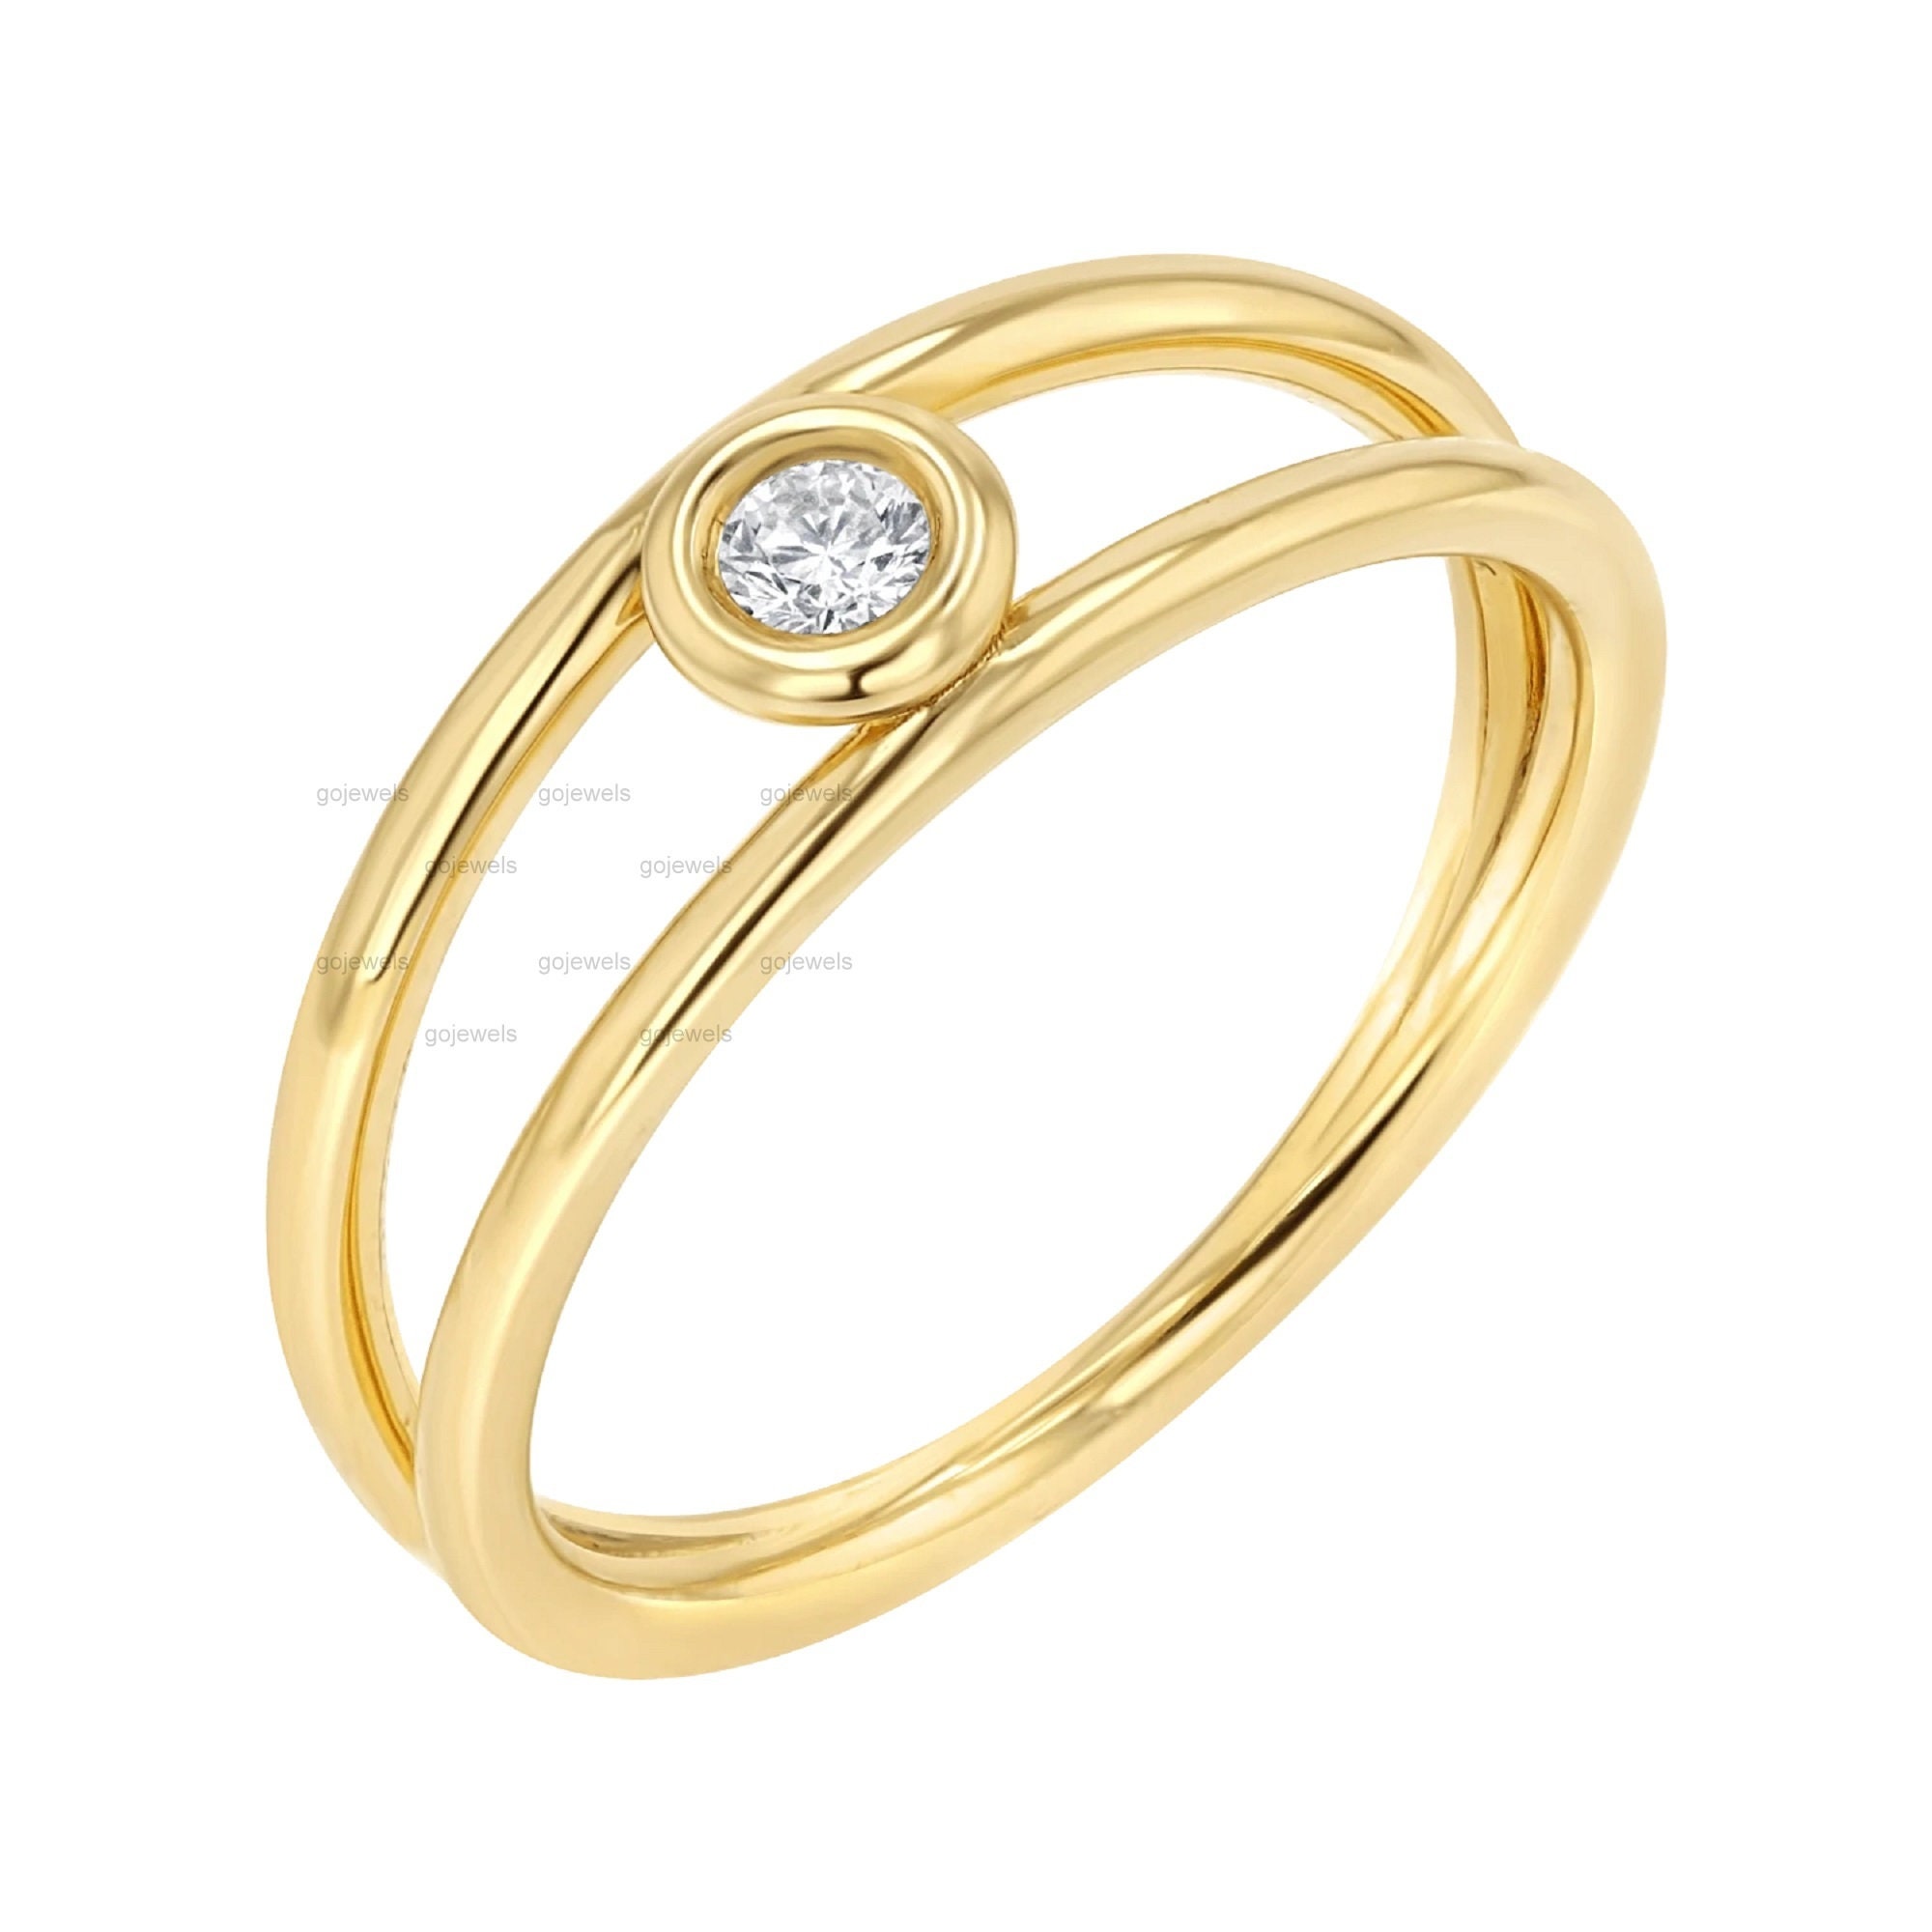 $10,000 Engagement Ring Buying Guide | Ritani